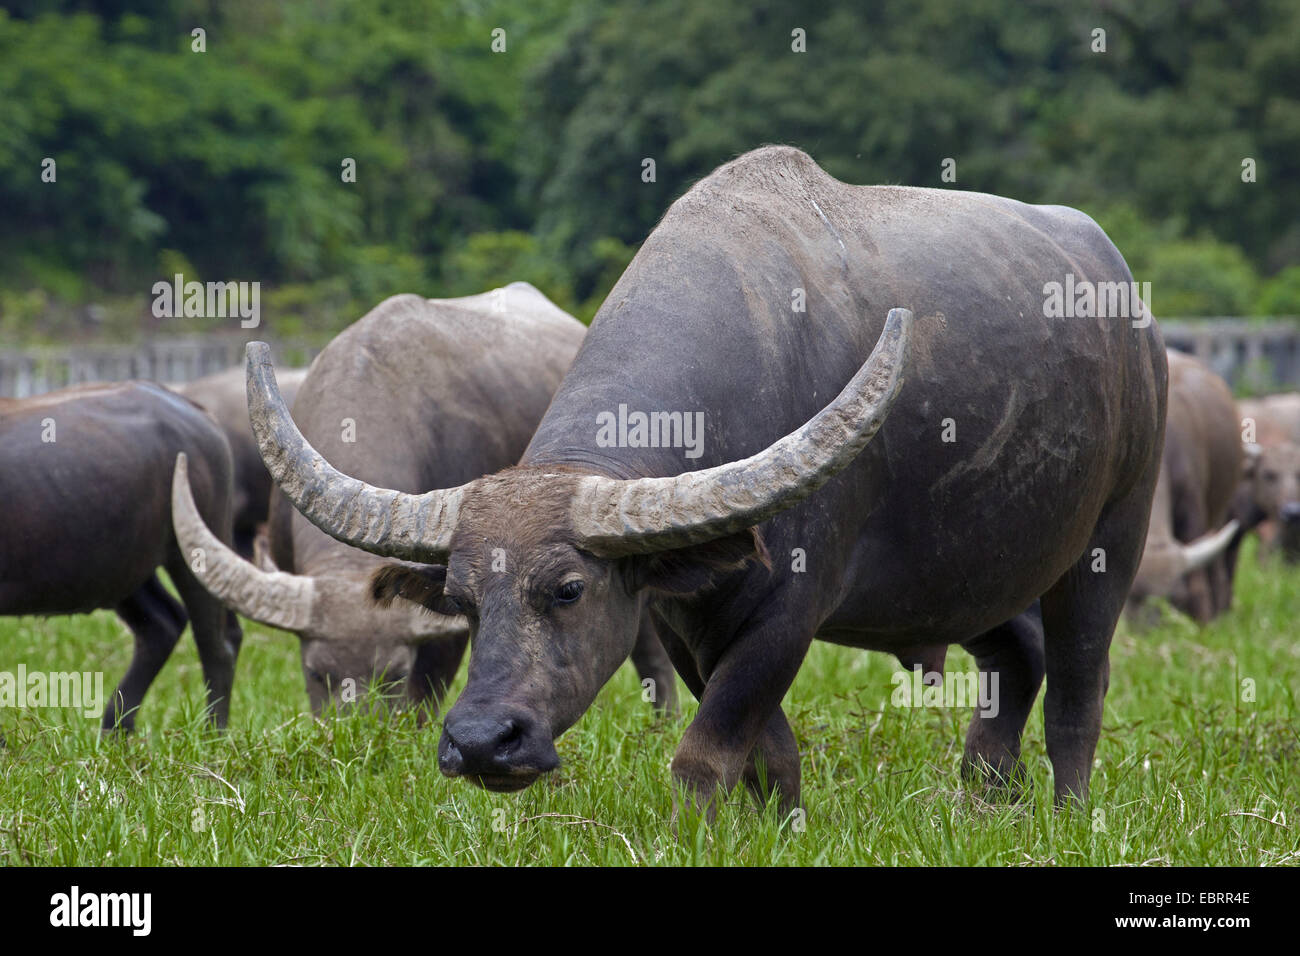 Asian water buffalo, wild water buffalo, carabao (Bubalus bubalis, Bubalus arnee), grazing in meadow, Thailand, Chiang Mai Stock Photo